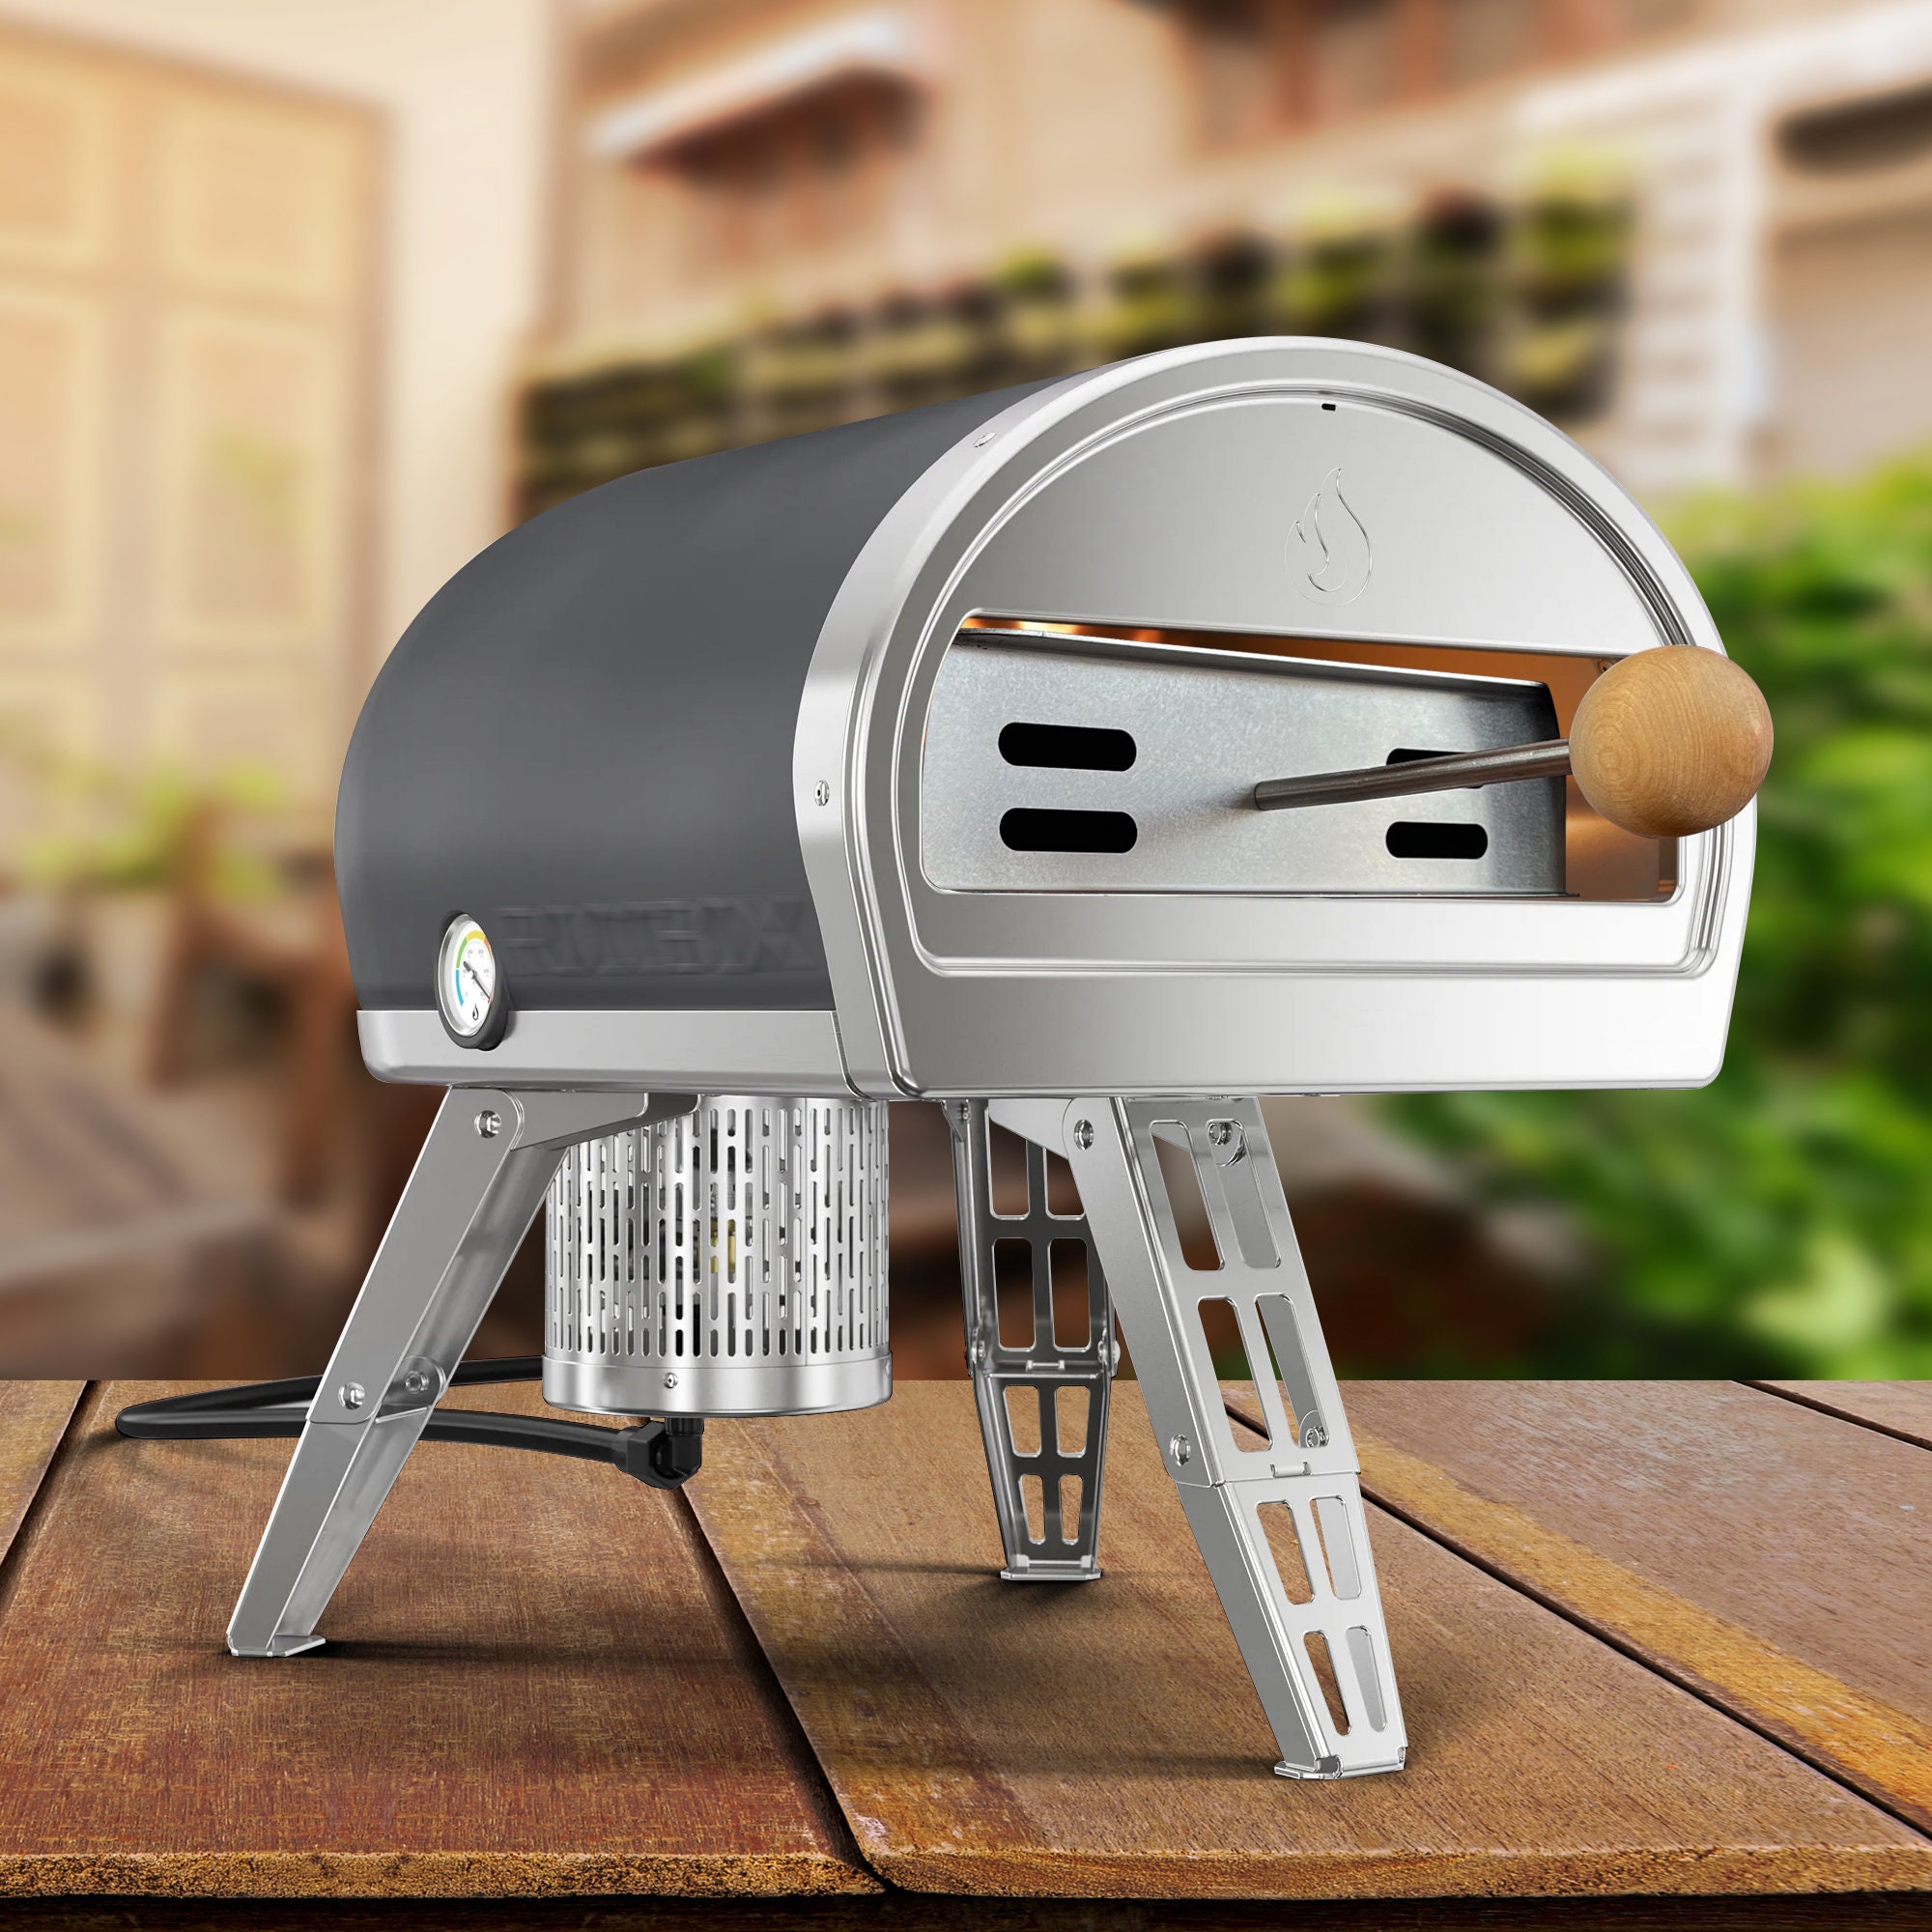 Roccbox: Mini Pizza Oven with the Right Stuff